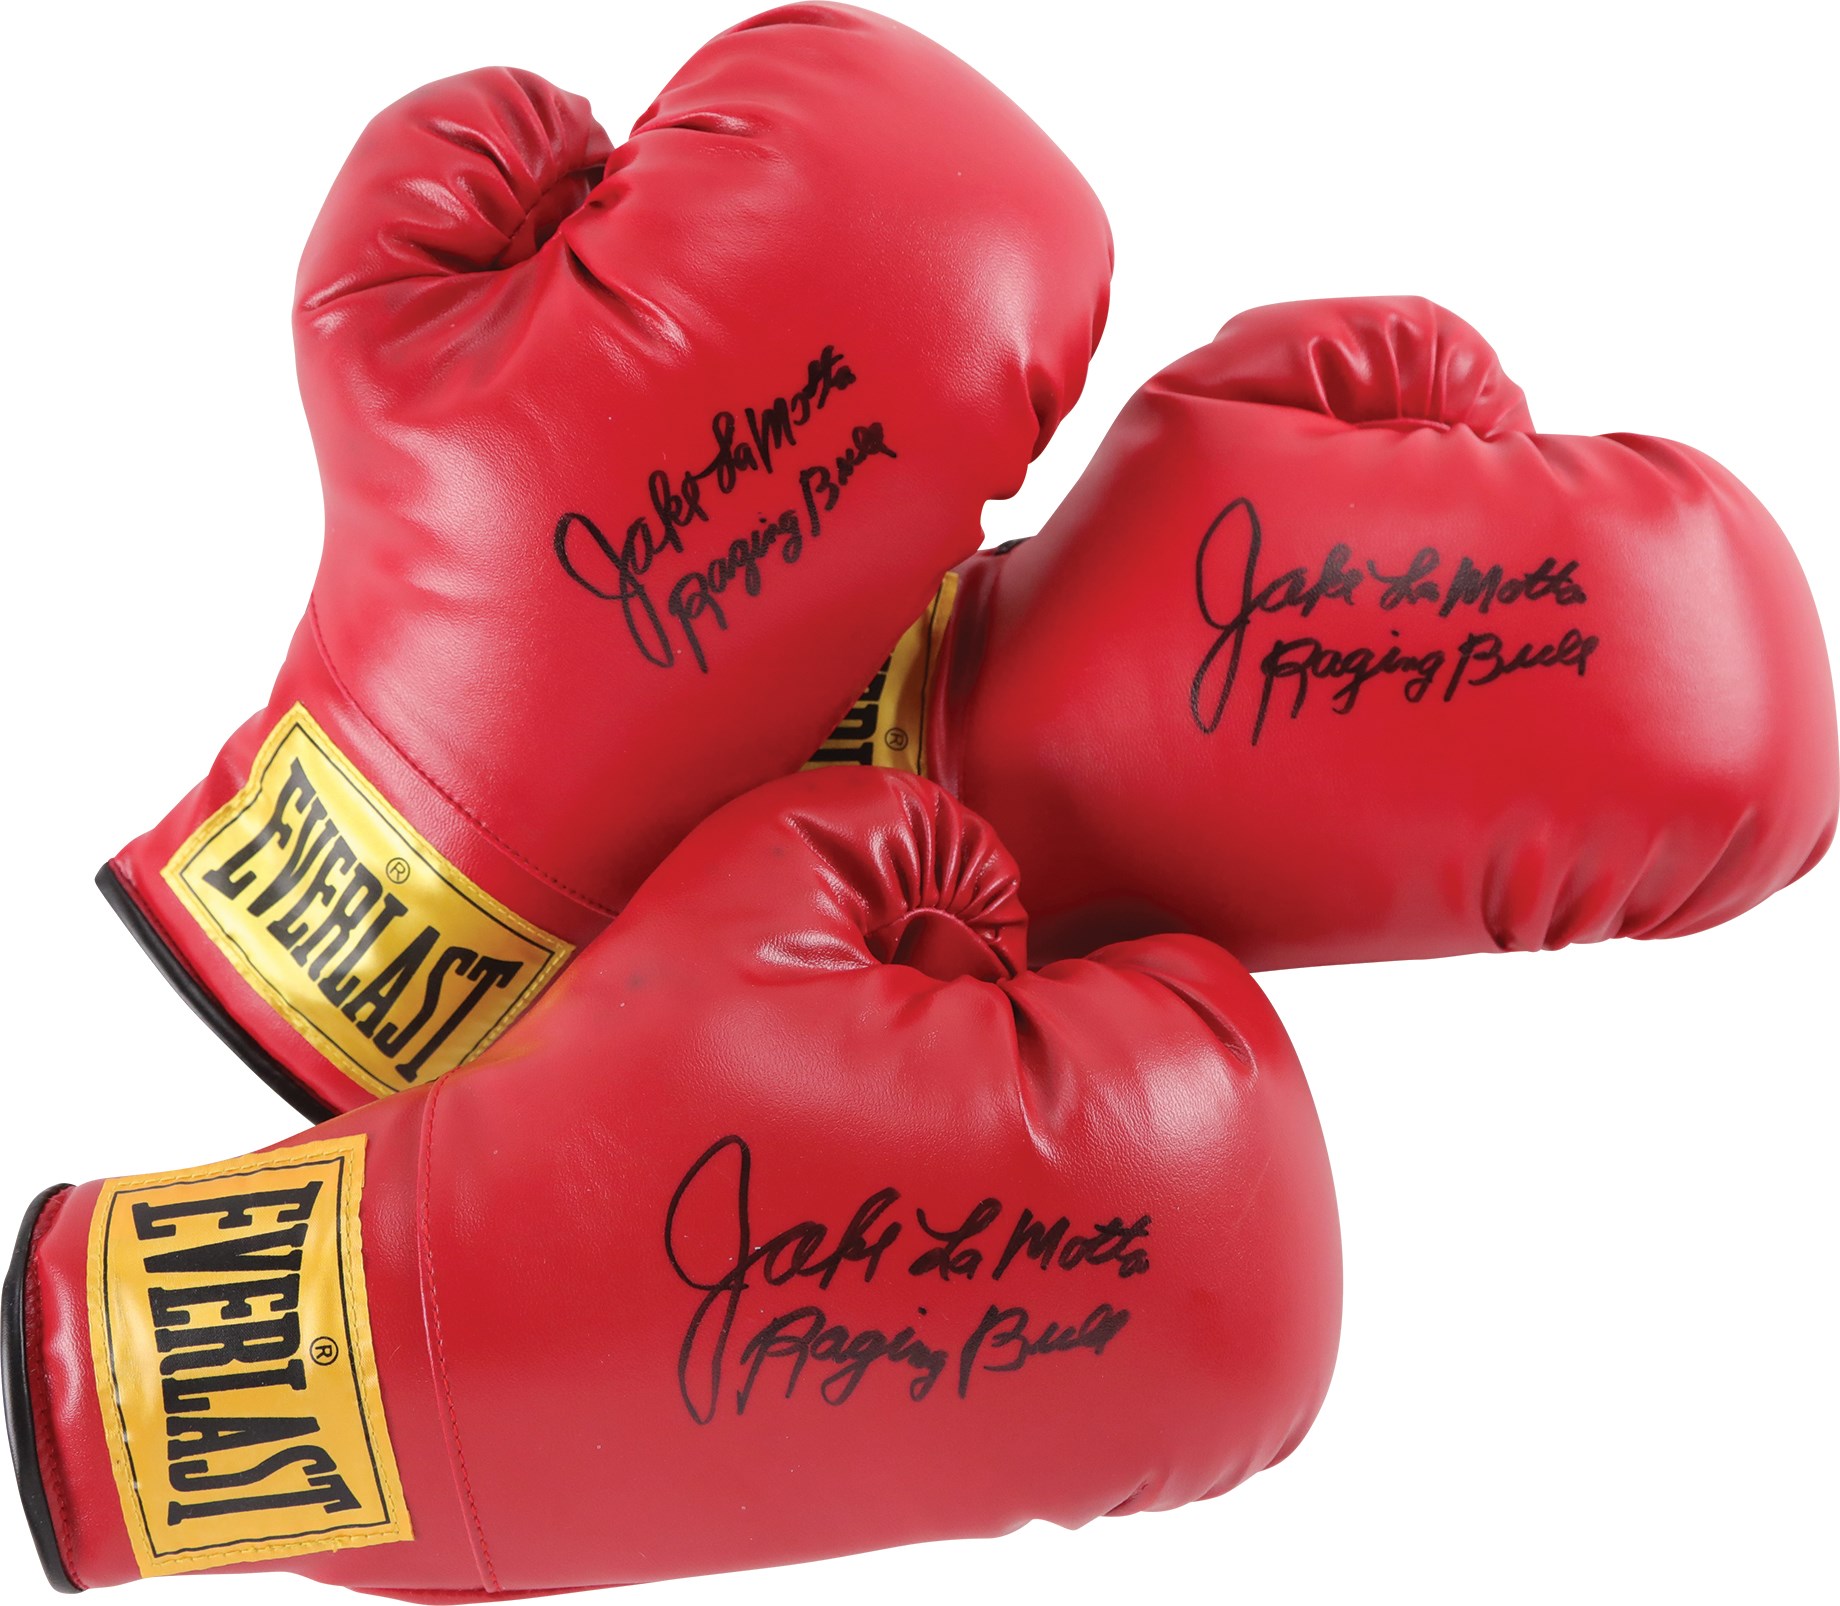 - Jake LaMotta "Raging Bull" Signed Boxing Gloves (3)